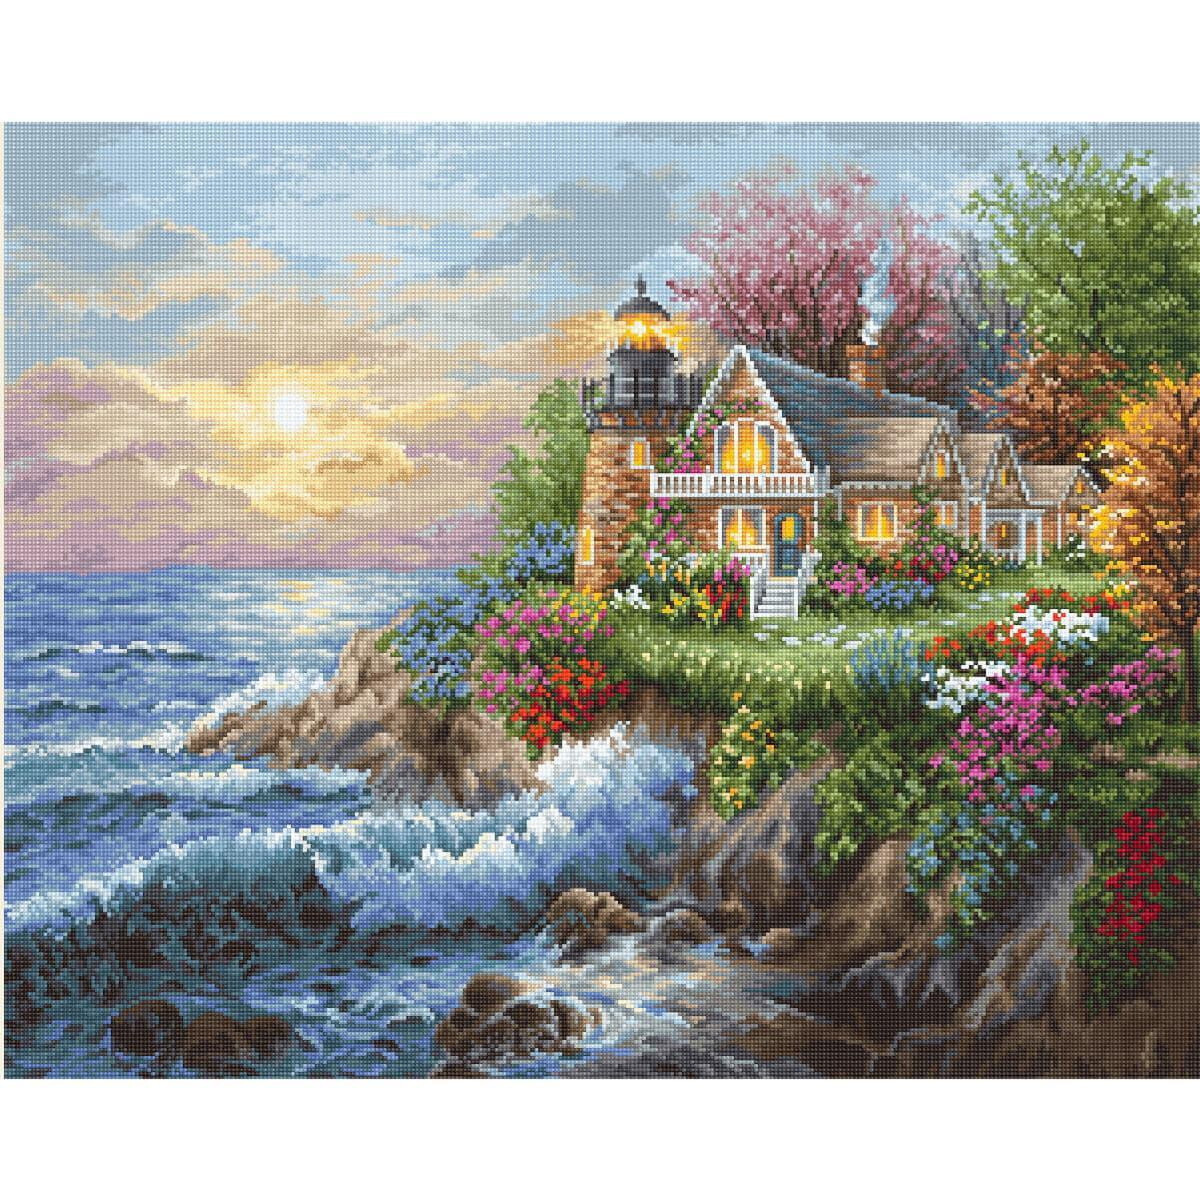 La imagen muestra una casita junto al mar con un faro,...